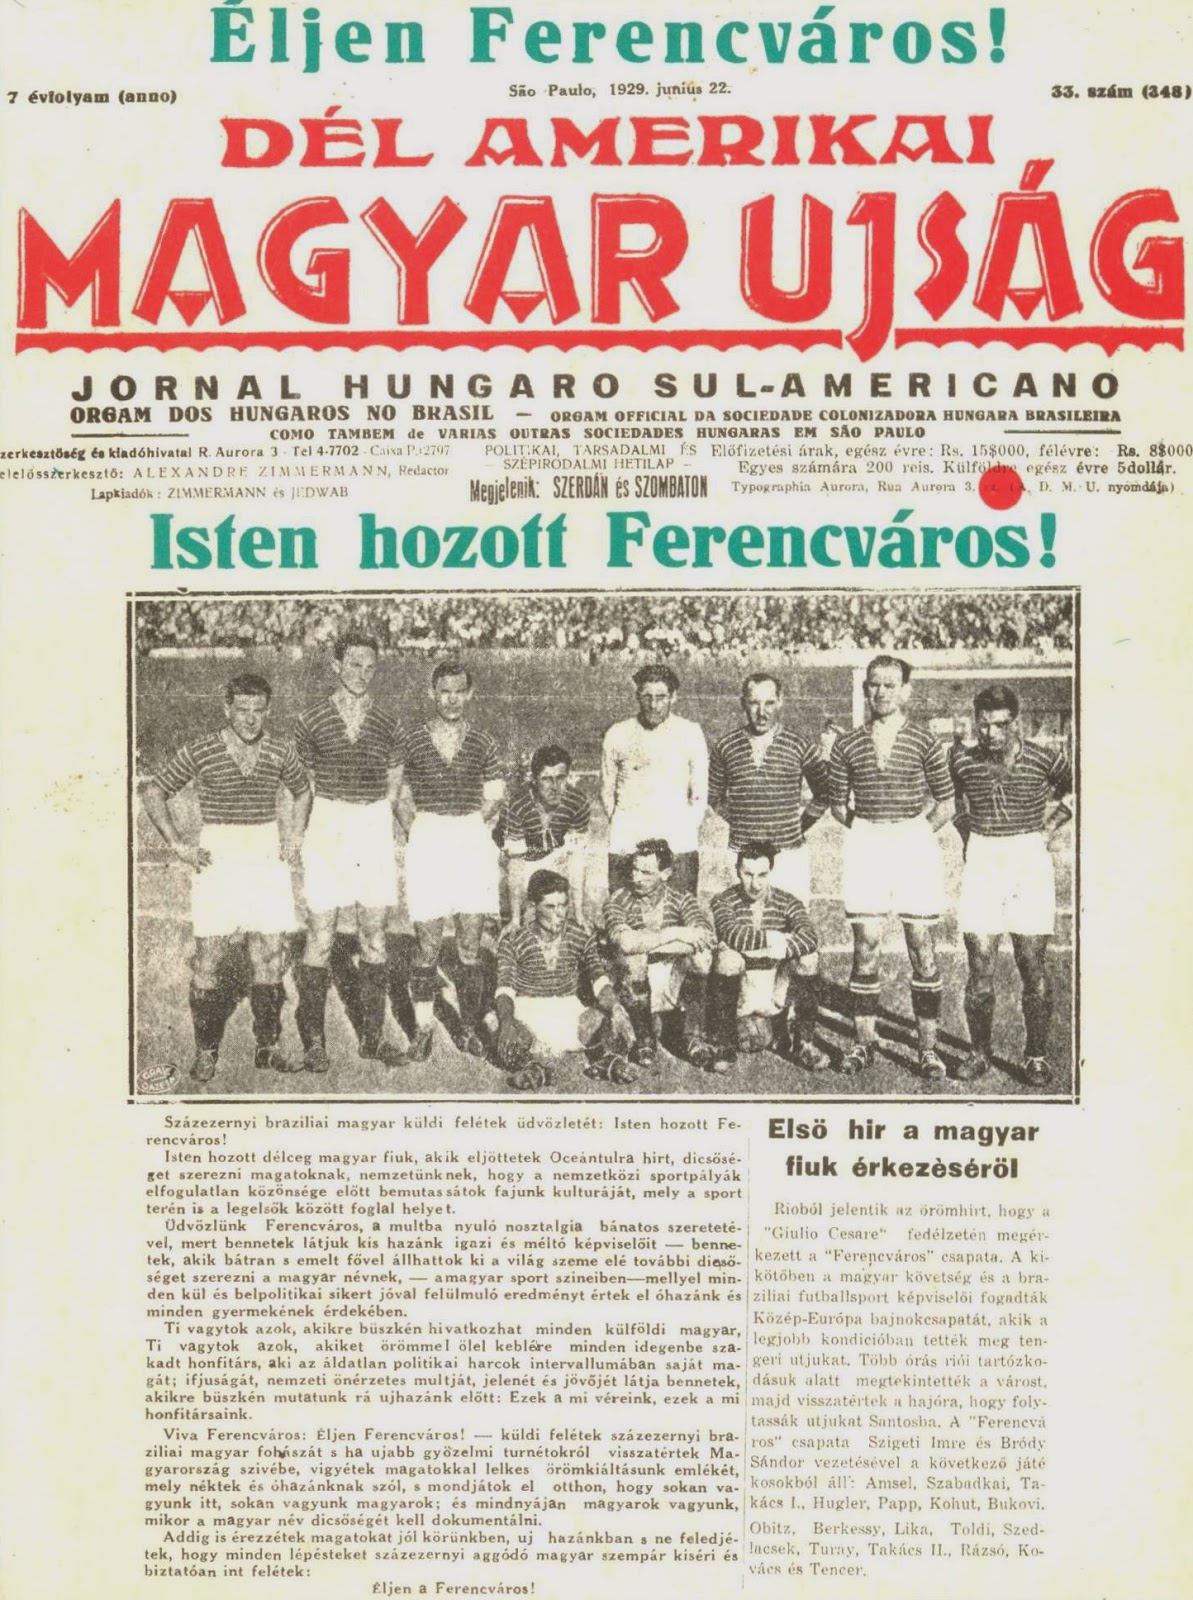 21 luglio 1929: Il Ferencváros che “tremare il nuovo mondo fa”